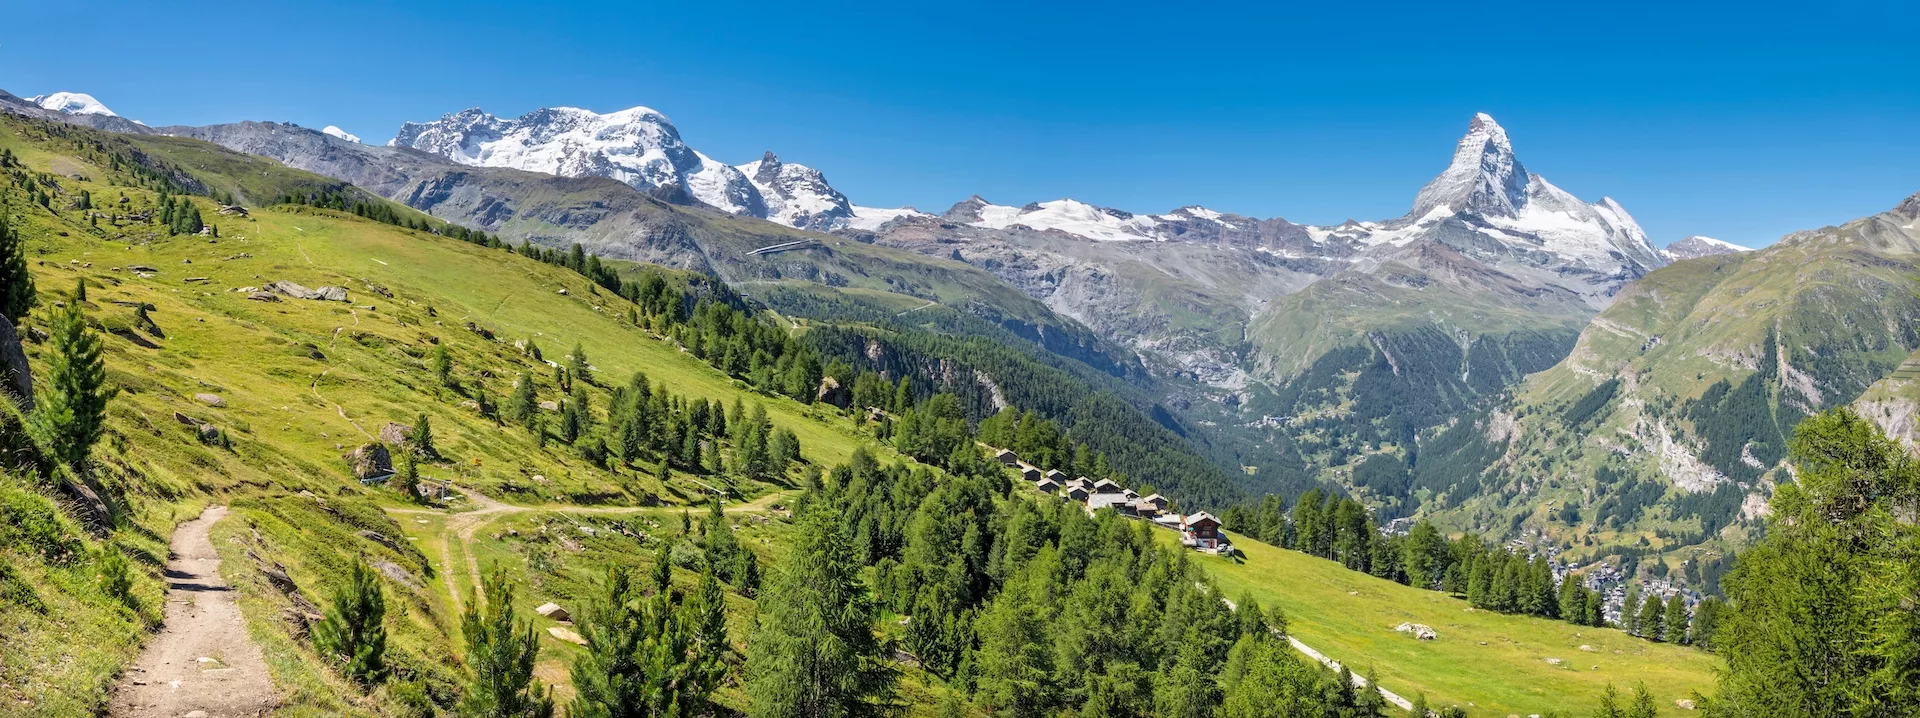 Panorama de los Alpes walliser suizos con los picos Matterhorn y Breithorn